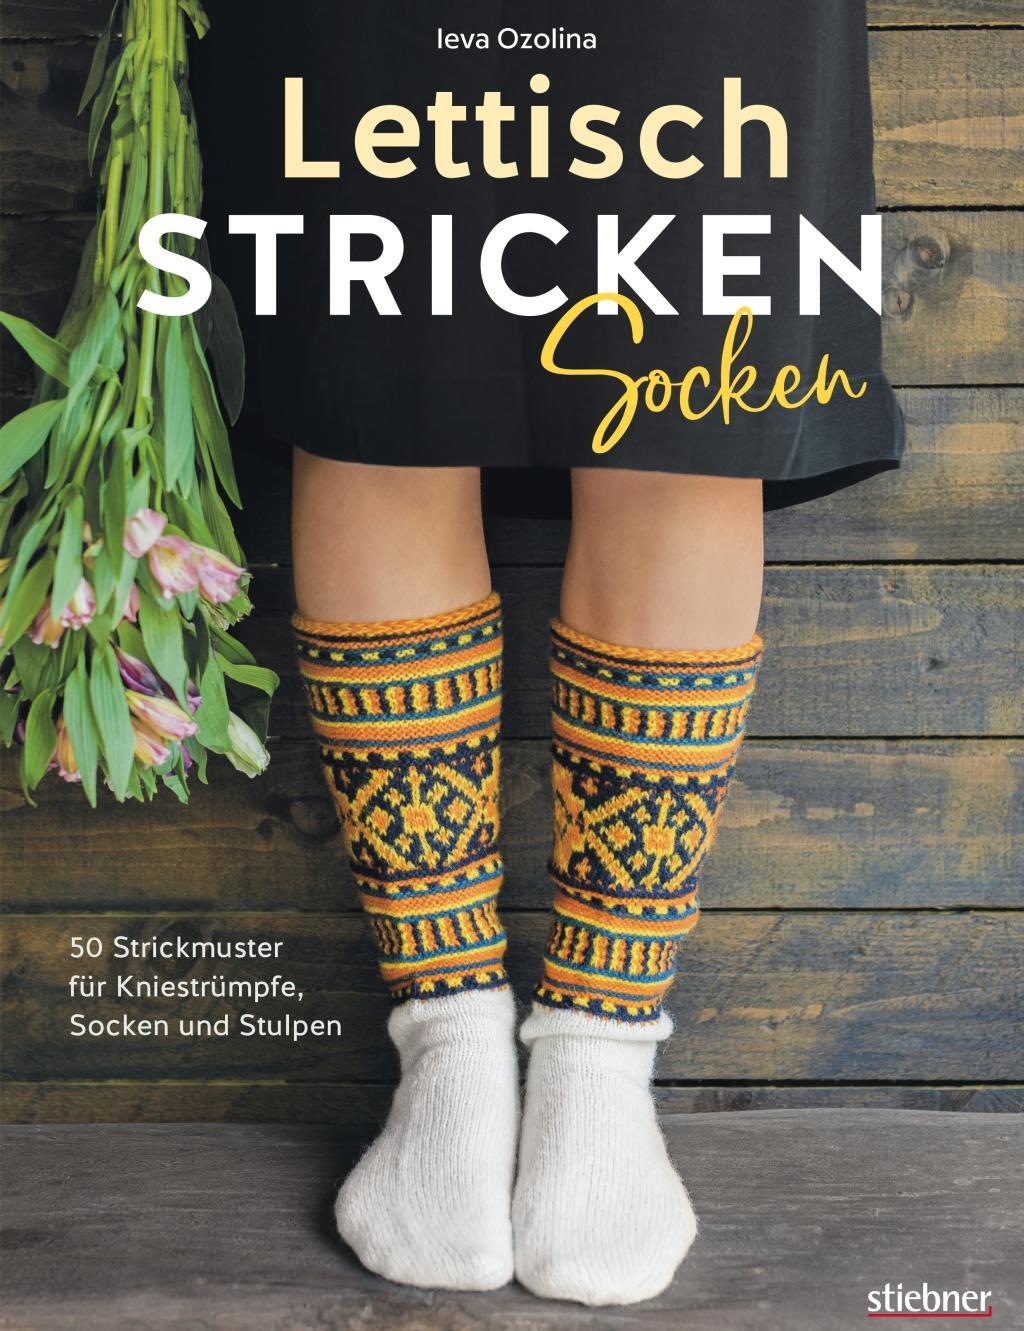 Kniha Lettisch stricken: Socken. 50 Strickmuster für Kniestrümpfe, Socken und Stulpen. 